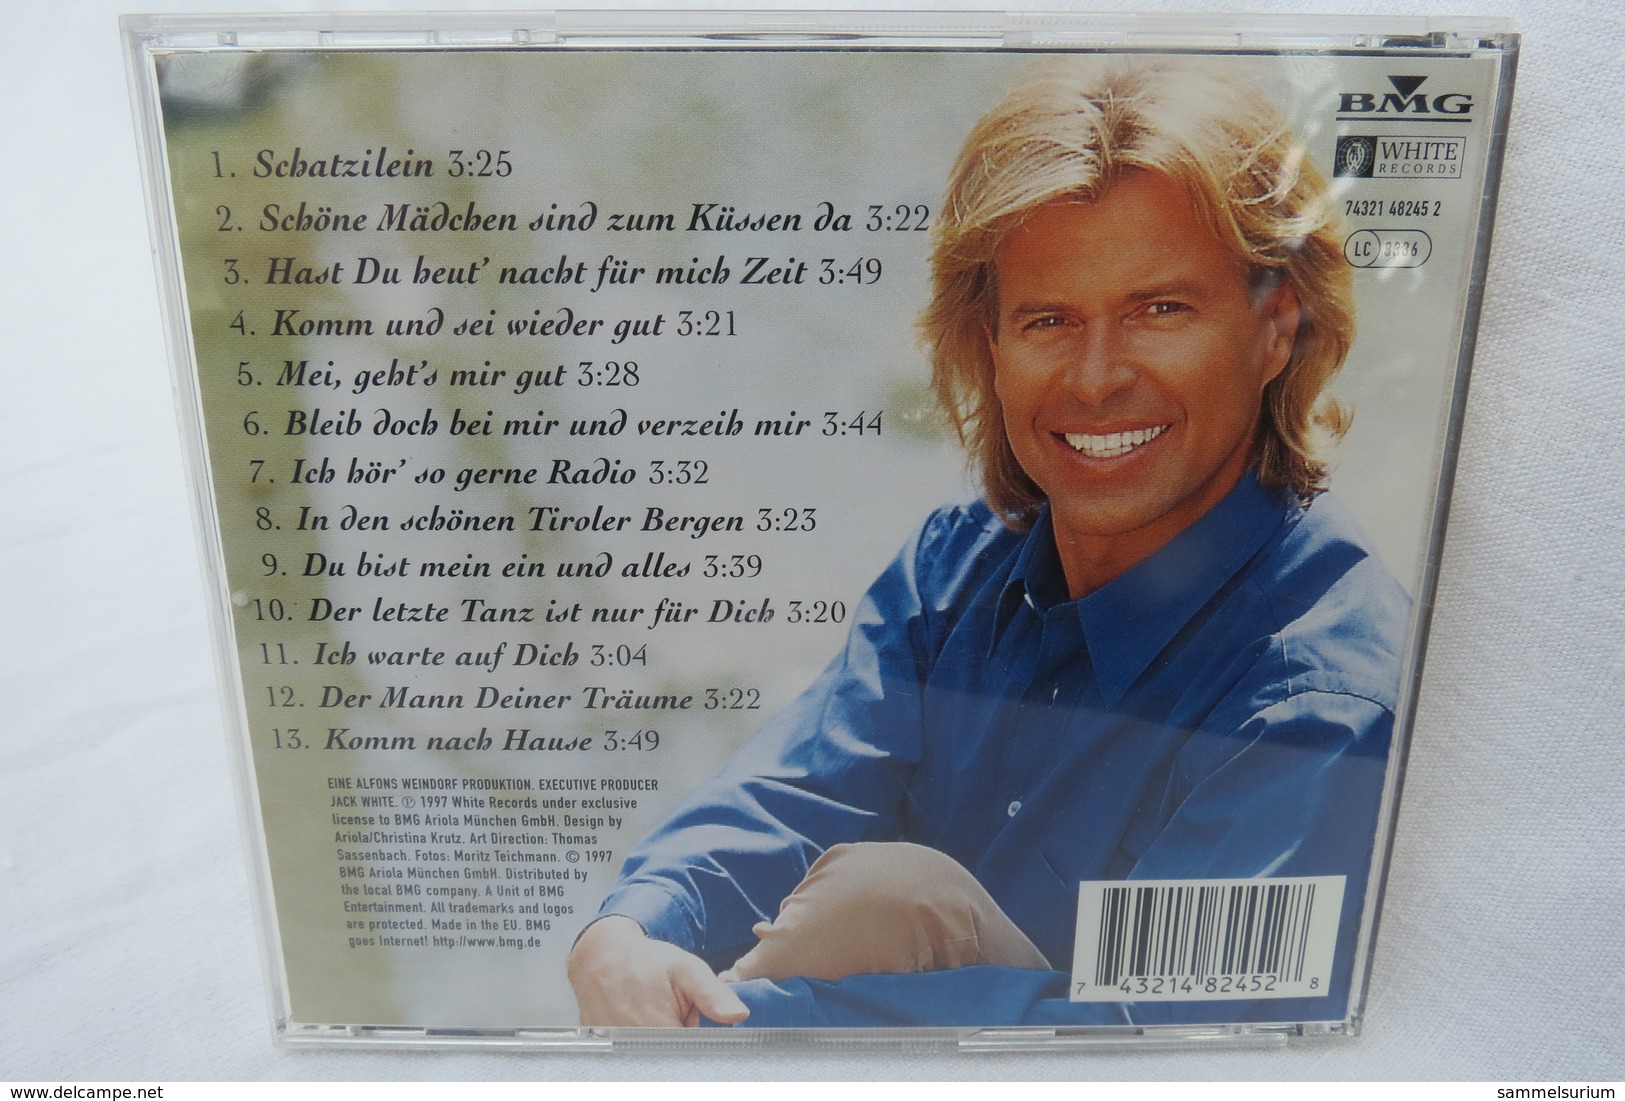 CD "Hansi Hinterseer" Ich Warte Auf Dich - Autres - Musique Allemande